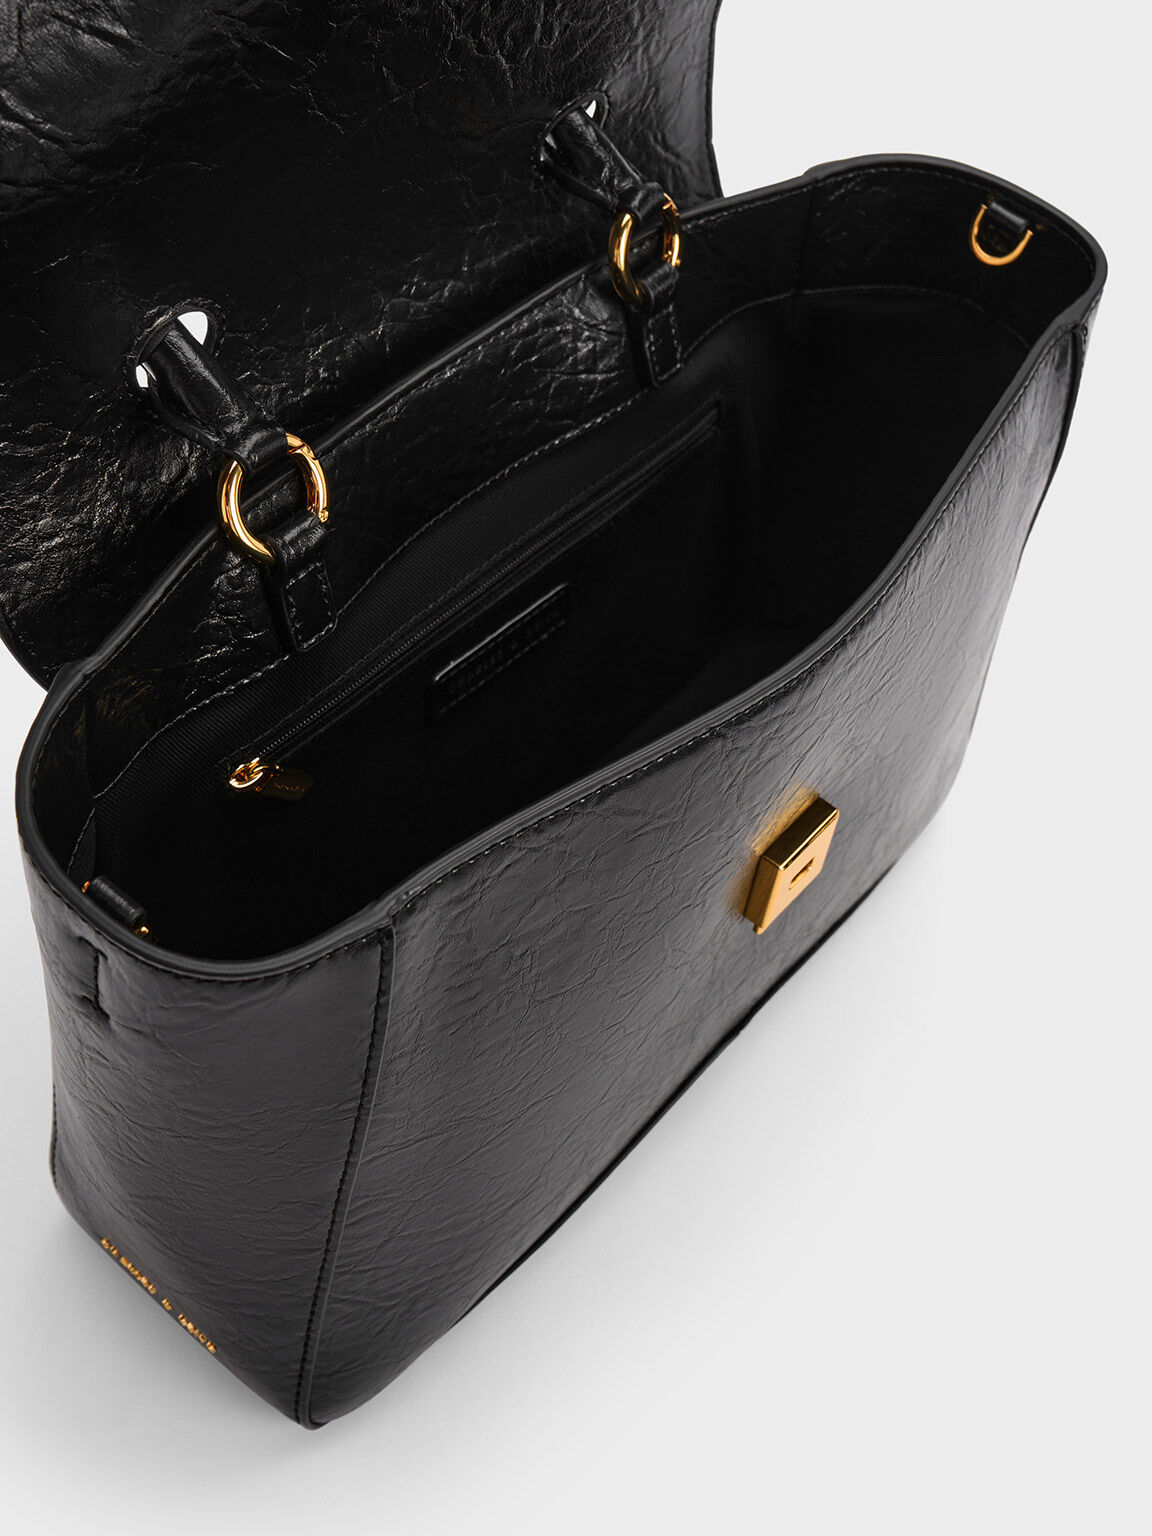 Arley Scarf-Wrapped Top Handle Bag, Black, hi-res